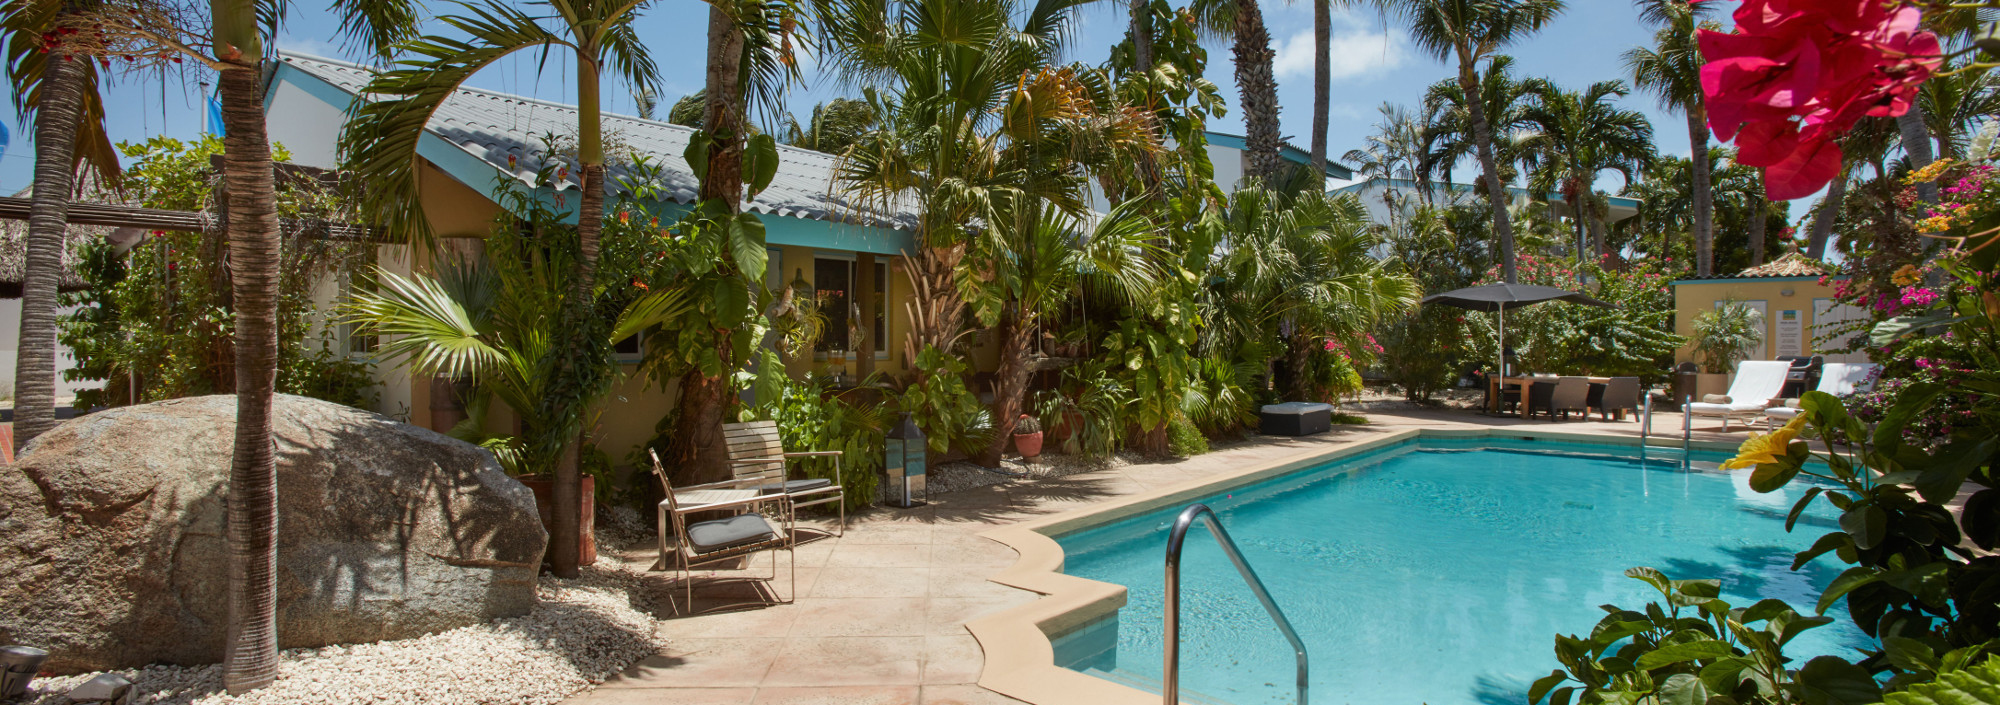 Pool im privaten Garten des Paradera Park auf Aruba